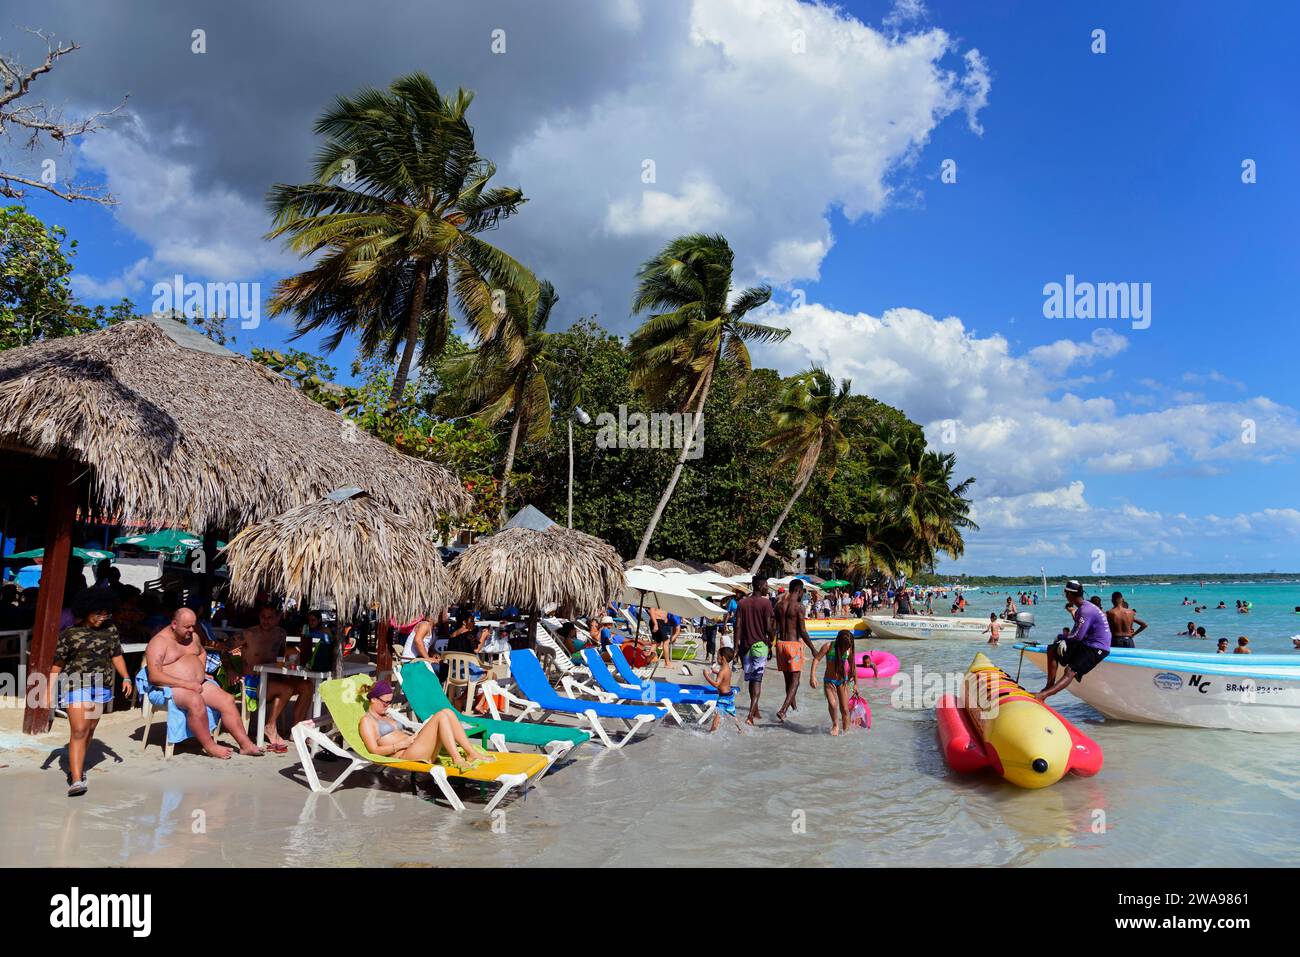 Urlauber verbringen Zeit am Strand mit aufblasbarem Spielzeug im Wasser, Boca Chica, Provinz Santo Domingo, Dominikanische Republik, Hispaniola, Karibik Stockfoto